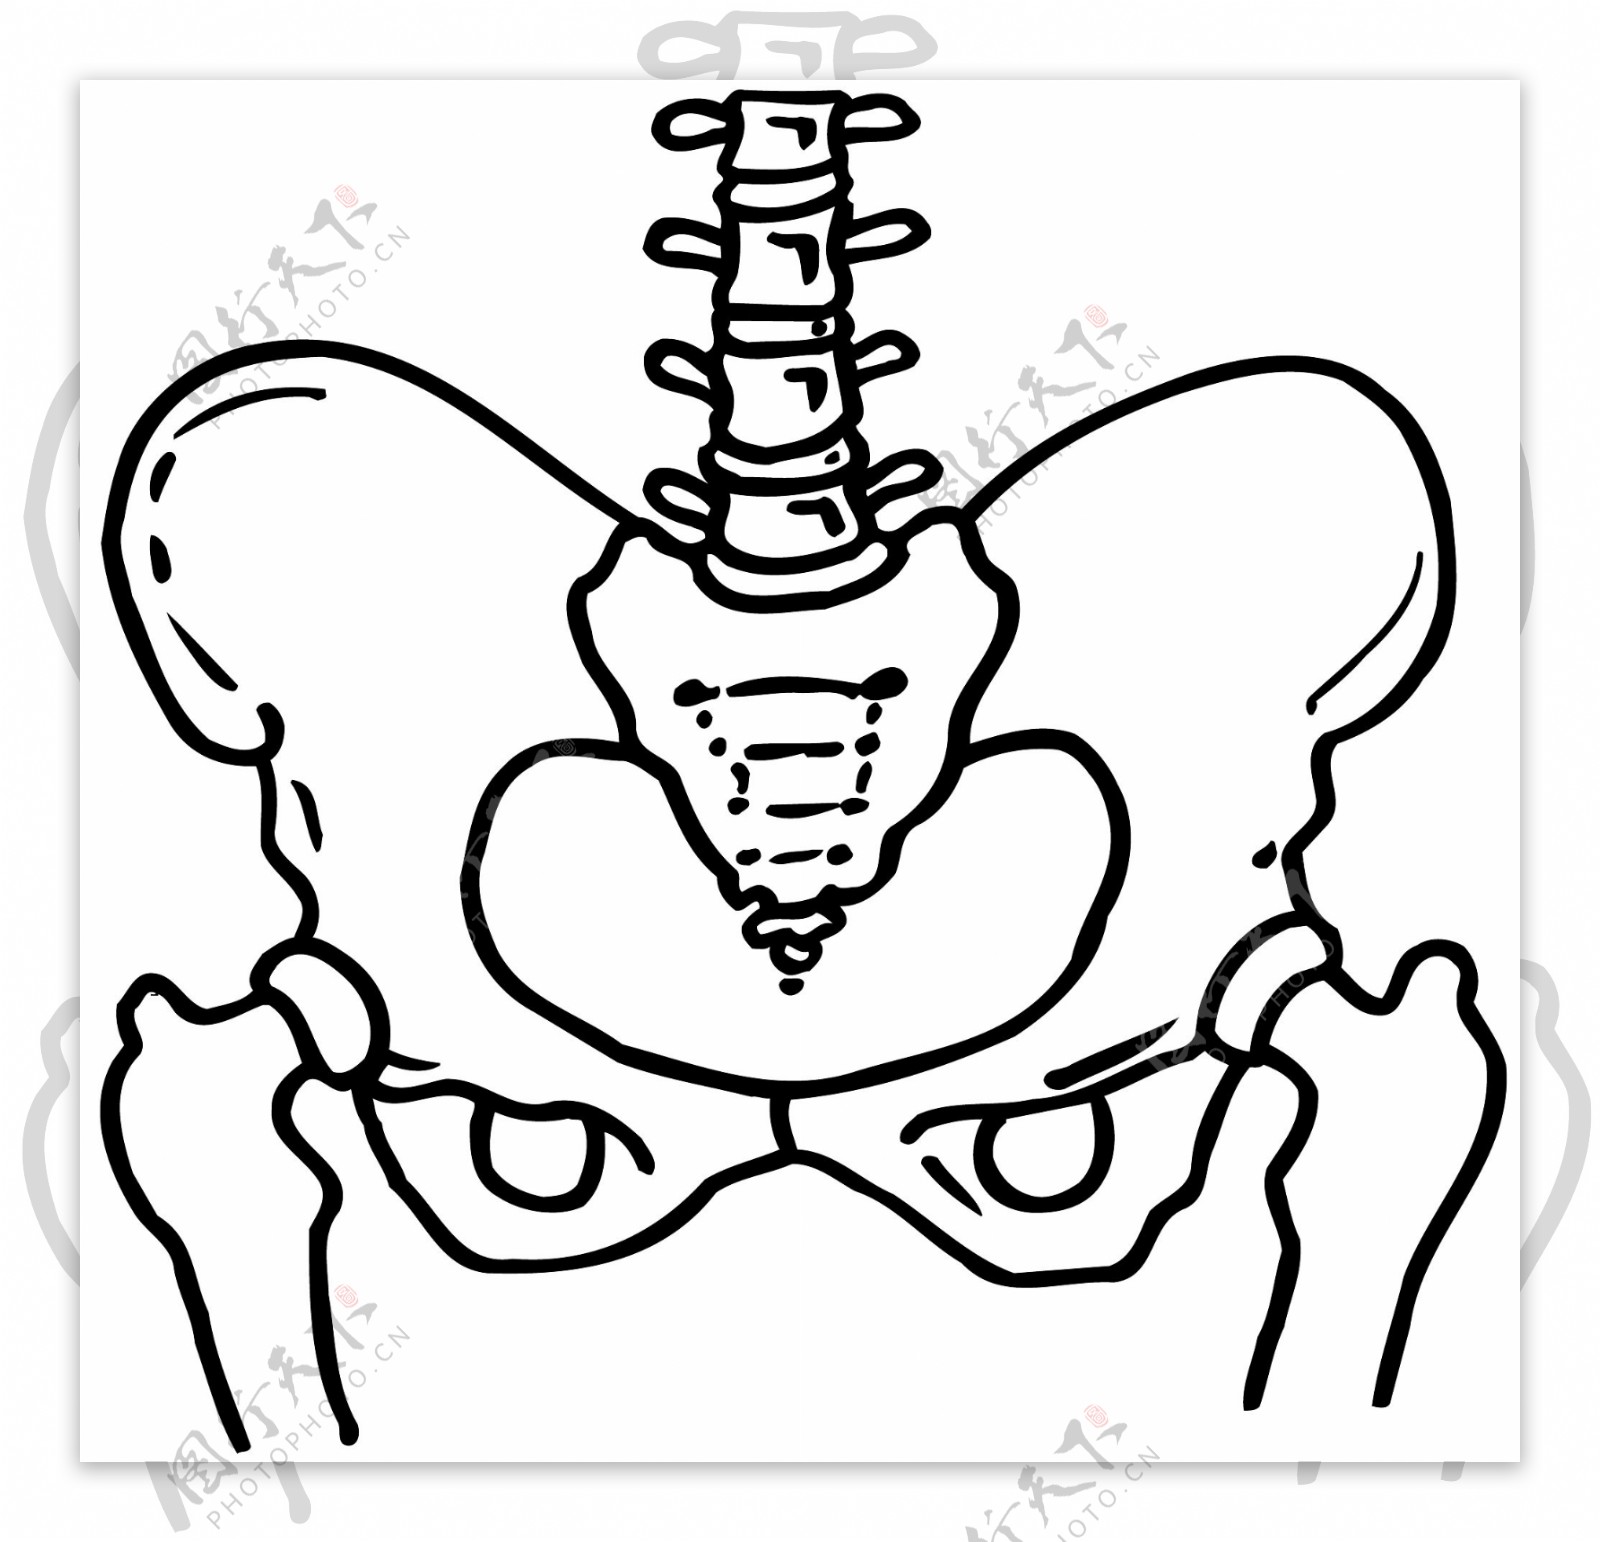 人体骨骼结构模型矢量素材eps格式0036